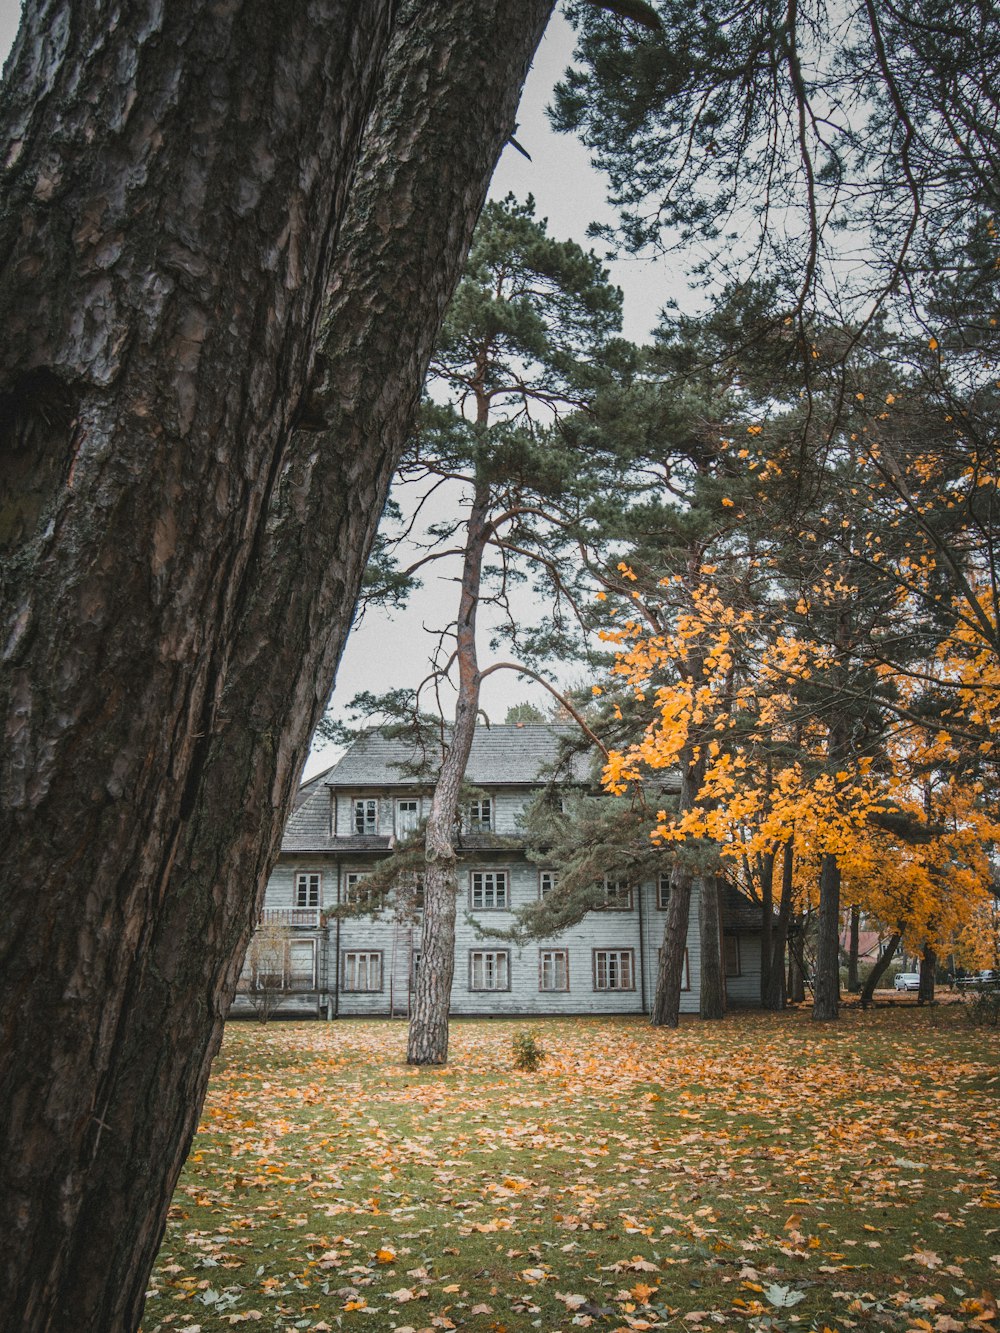 Una gran casa blanca rodeada de árboles y hojas